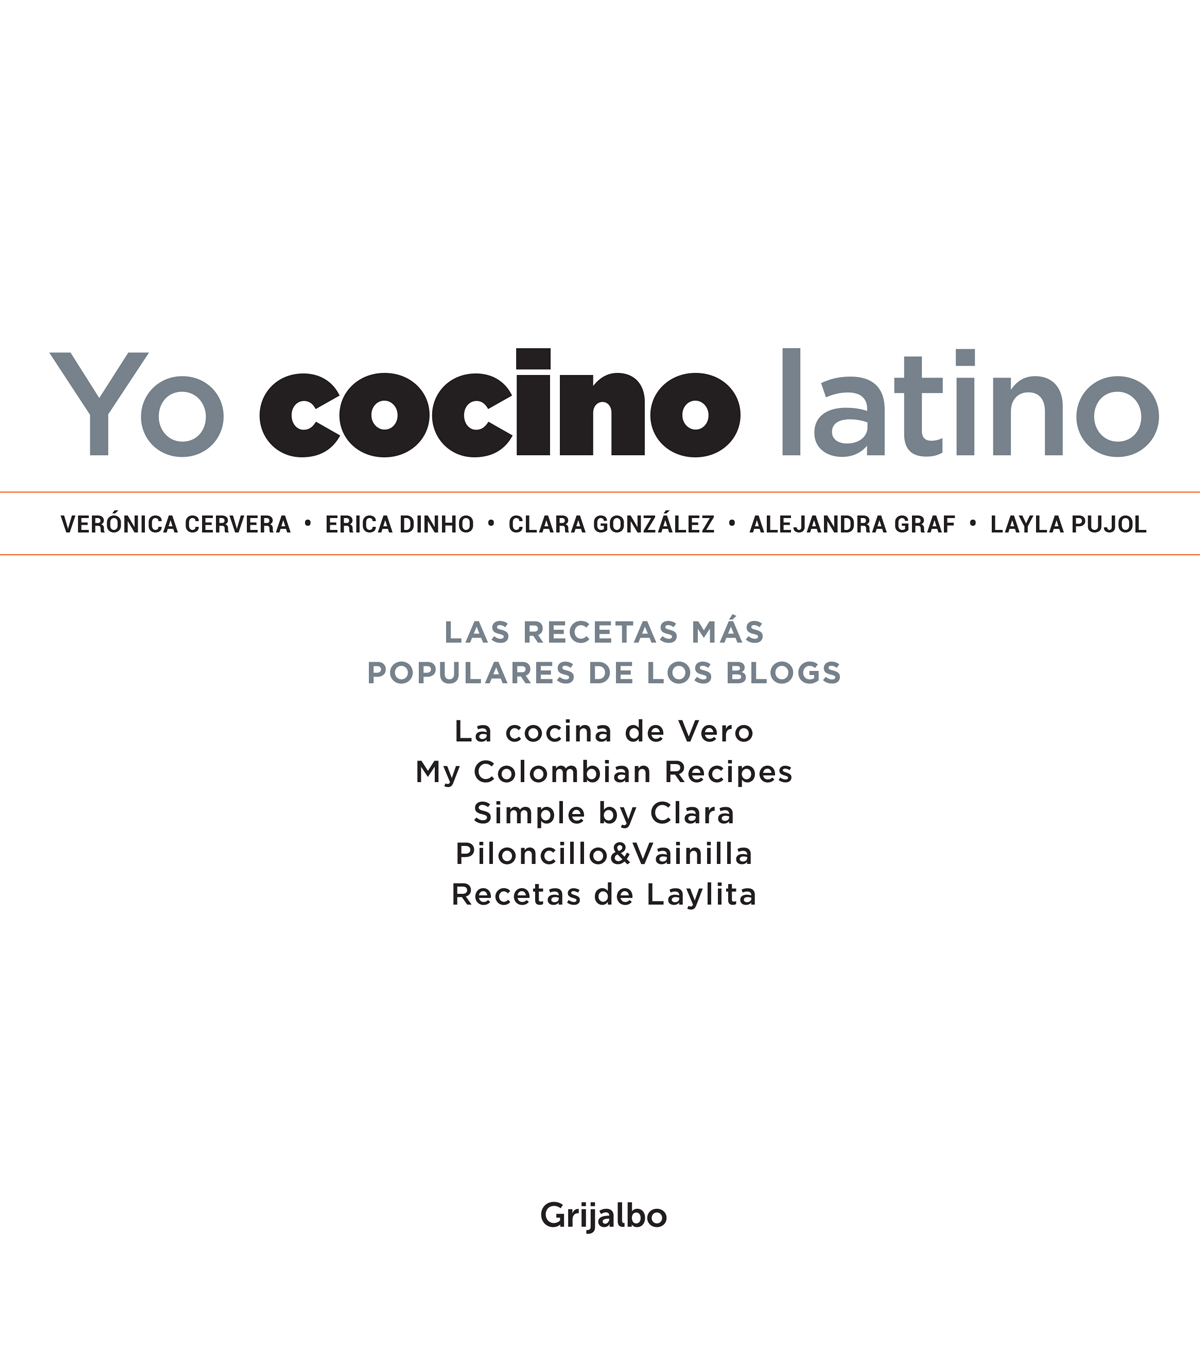 Yo cocino latino Las mejores recetas de cinco populares blogs de cocina hispana - image 3